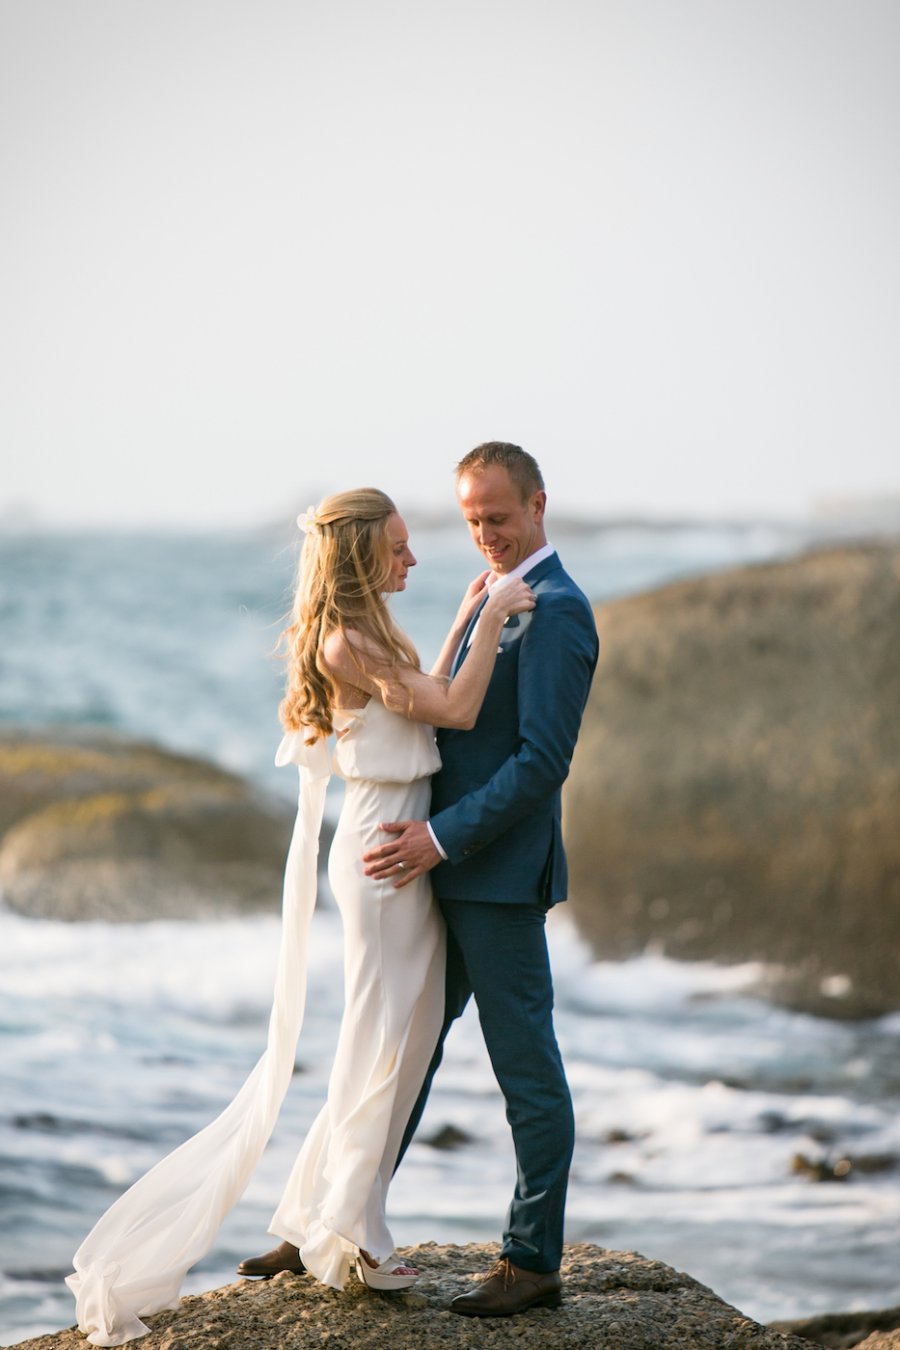 Brautpaar steht auf einem Stein und befestigt Blume am Anzug